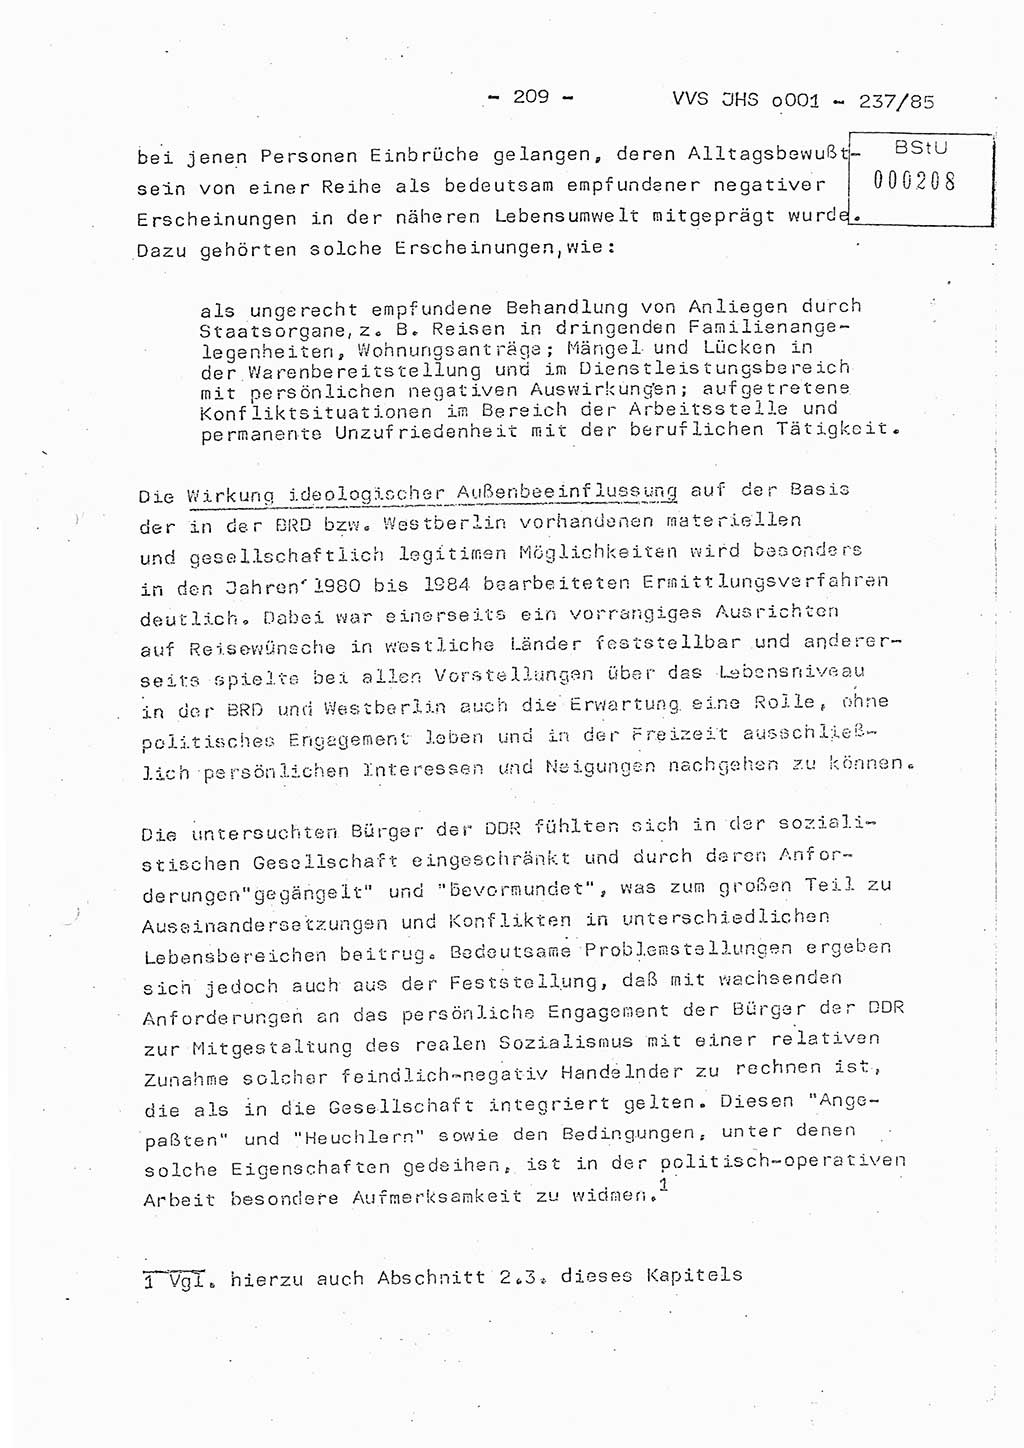 Dissertation Oberstleutnant Peter Jakulski (JHS), Oberstleutnat Christian Rudolph (HA Ⅸ), Major Horst Böttger (ZMD), Major Wolfgang Grüneberg (JHS), Major Albert Meutsch (JHS), Ministerium für Staatssicherheit (MfS) [Deutsche Demokratische Republik (DDR)], Juristische Hochschule (JHS), Vertrauliche Verschlußsache (VVS) o001-237/85, Potsdam 1985, Seite 209 (Diss. MfS DDR JHS VVS o001-237/85 1985, S. 209)